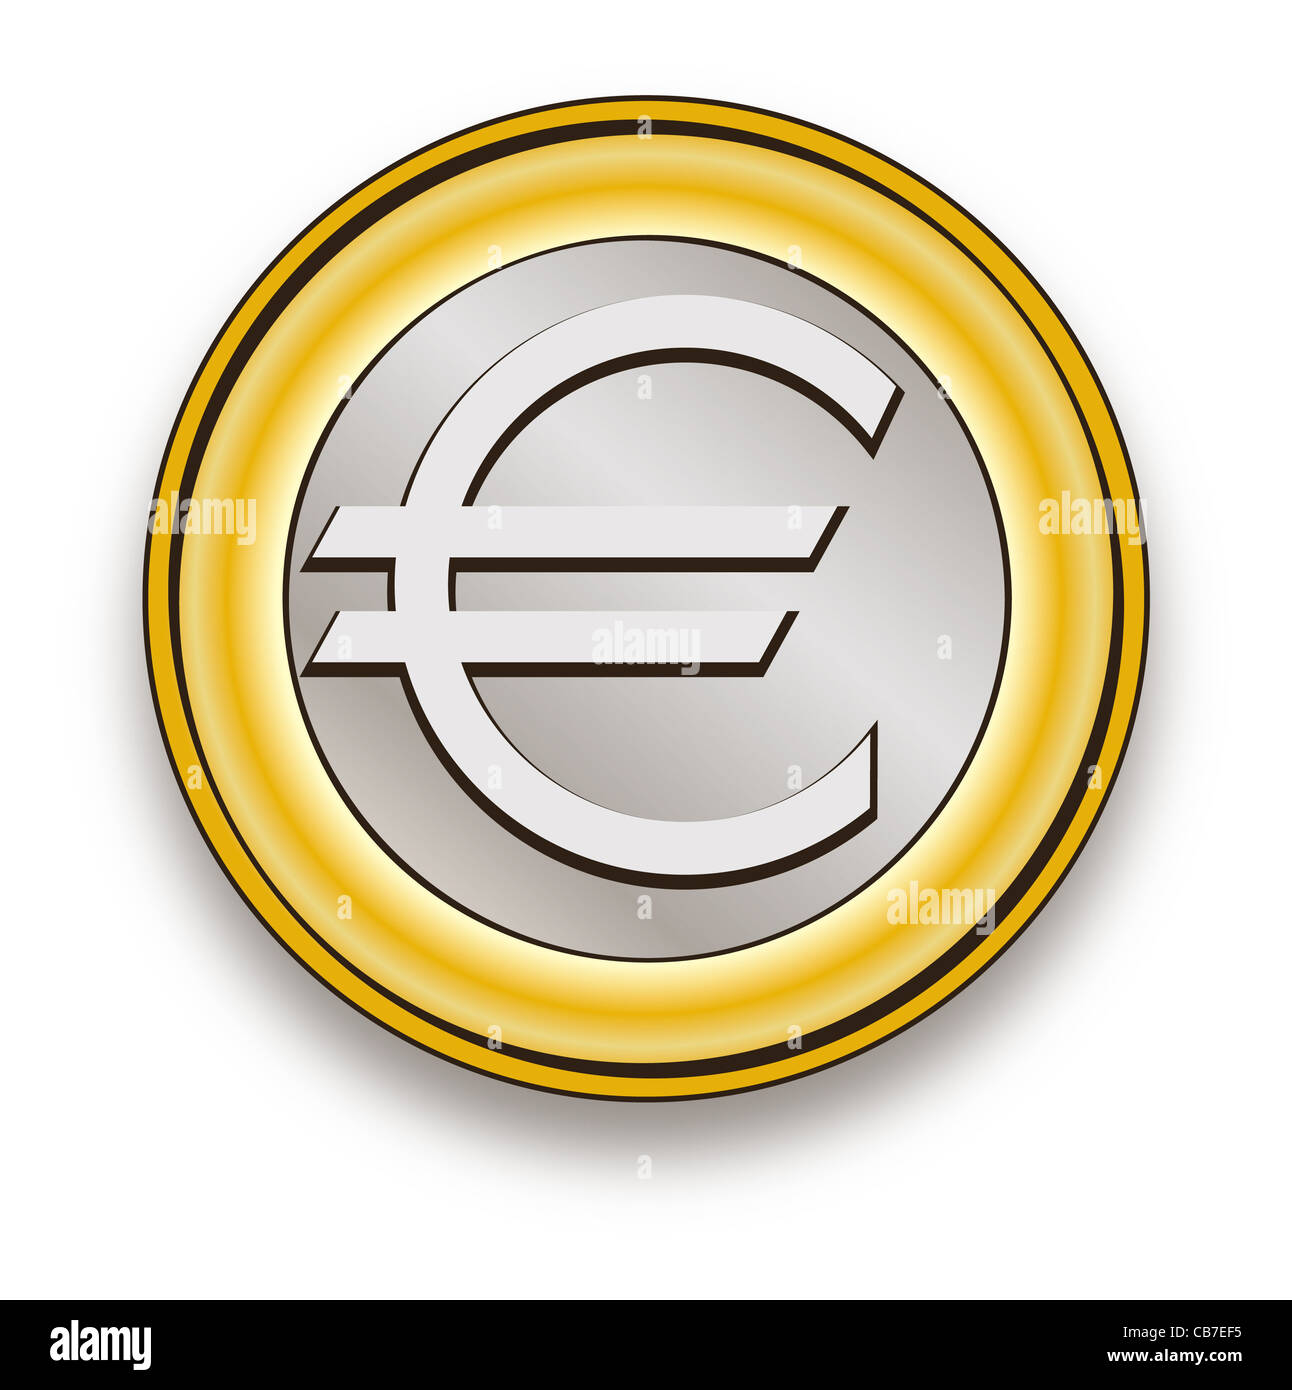 Euro symbol coin vector Stock Photo - Alamy